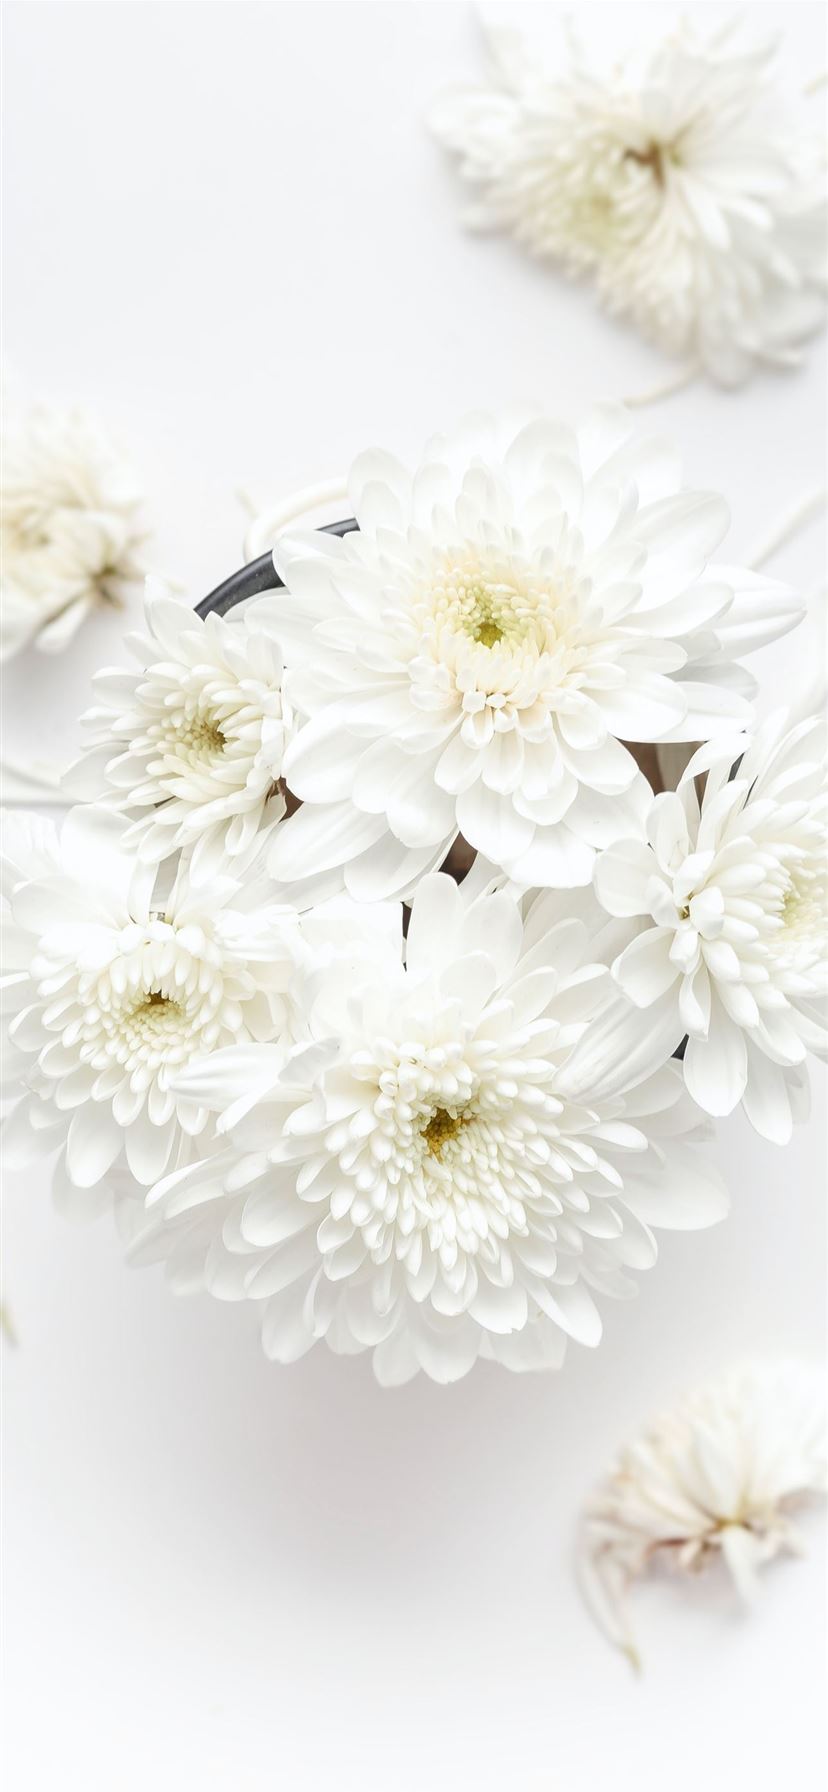 Nếu bạn yêu thích những bông hoa trắng tinh khôi và muốt màu, thì những bức hình nền trắng chủ đạo với hoa trắng tuyệt đẹp chắc chắn là sự lựa chọn hoàn hảo để trang trí cho chiếc iPhone của bạn. Hãy khám phá ngay những mẫu white flower iPhone wallpaper độc đáo và sang trọng nhất tại chúng tôi.